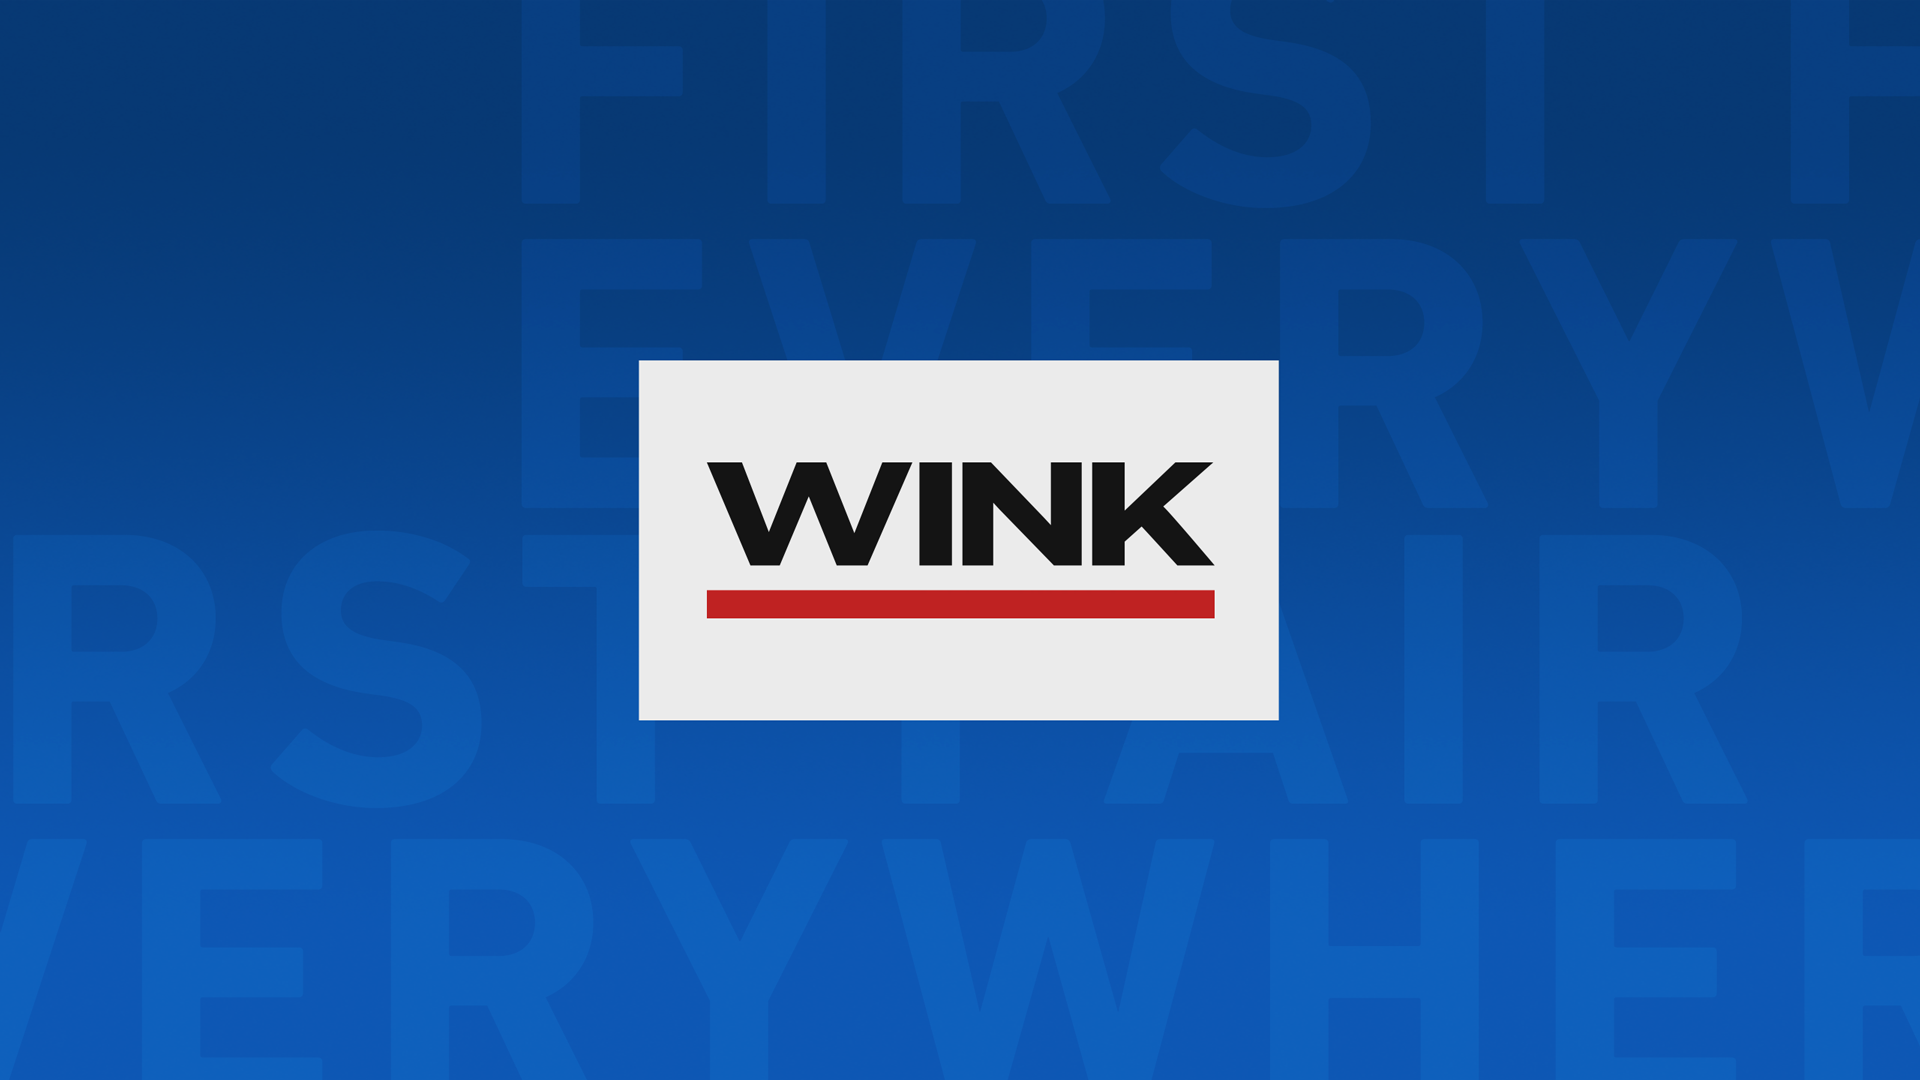 WINK News at 10